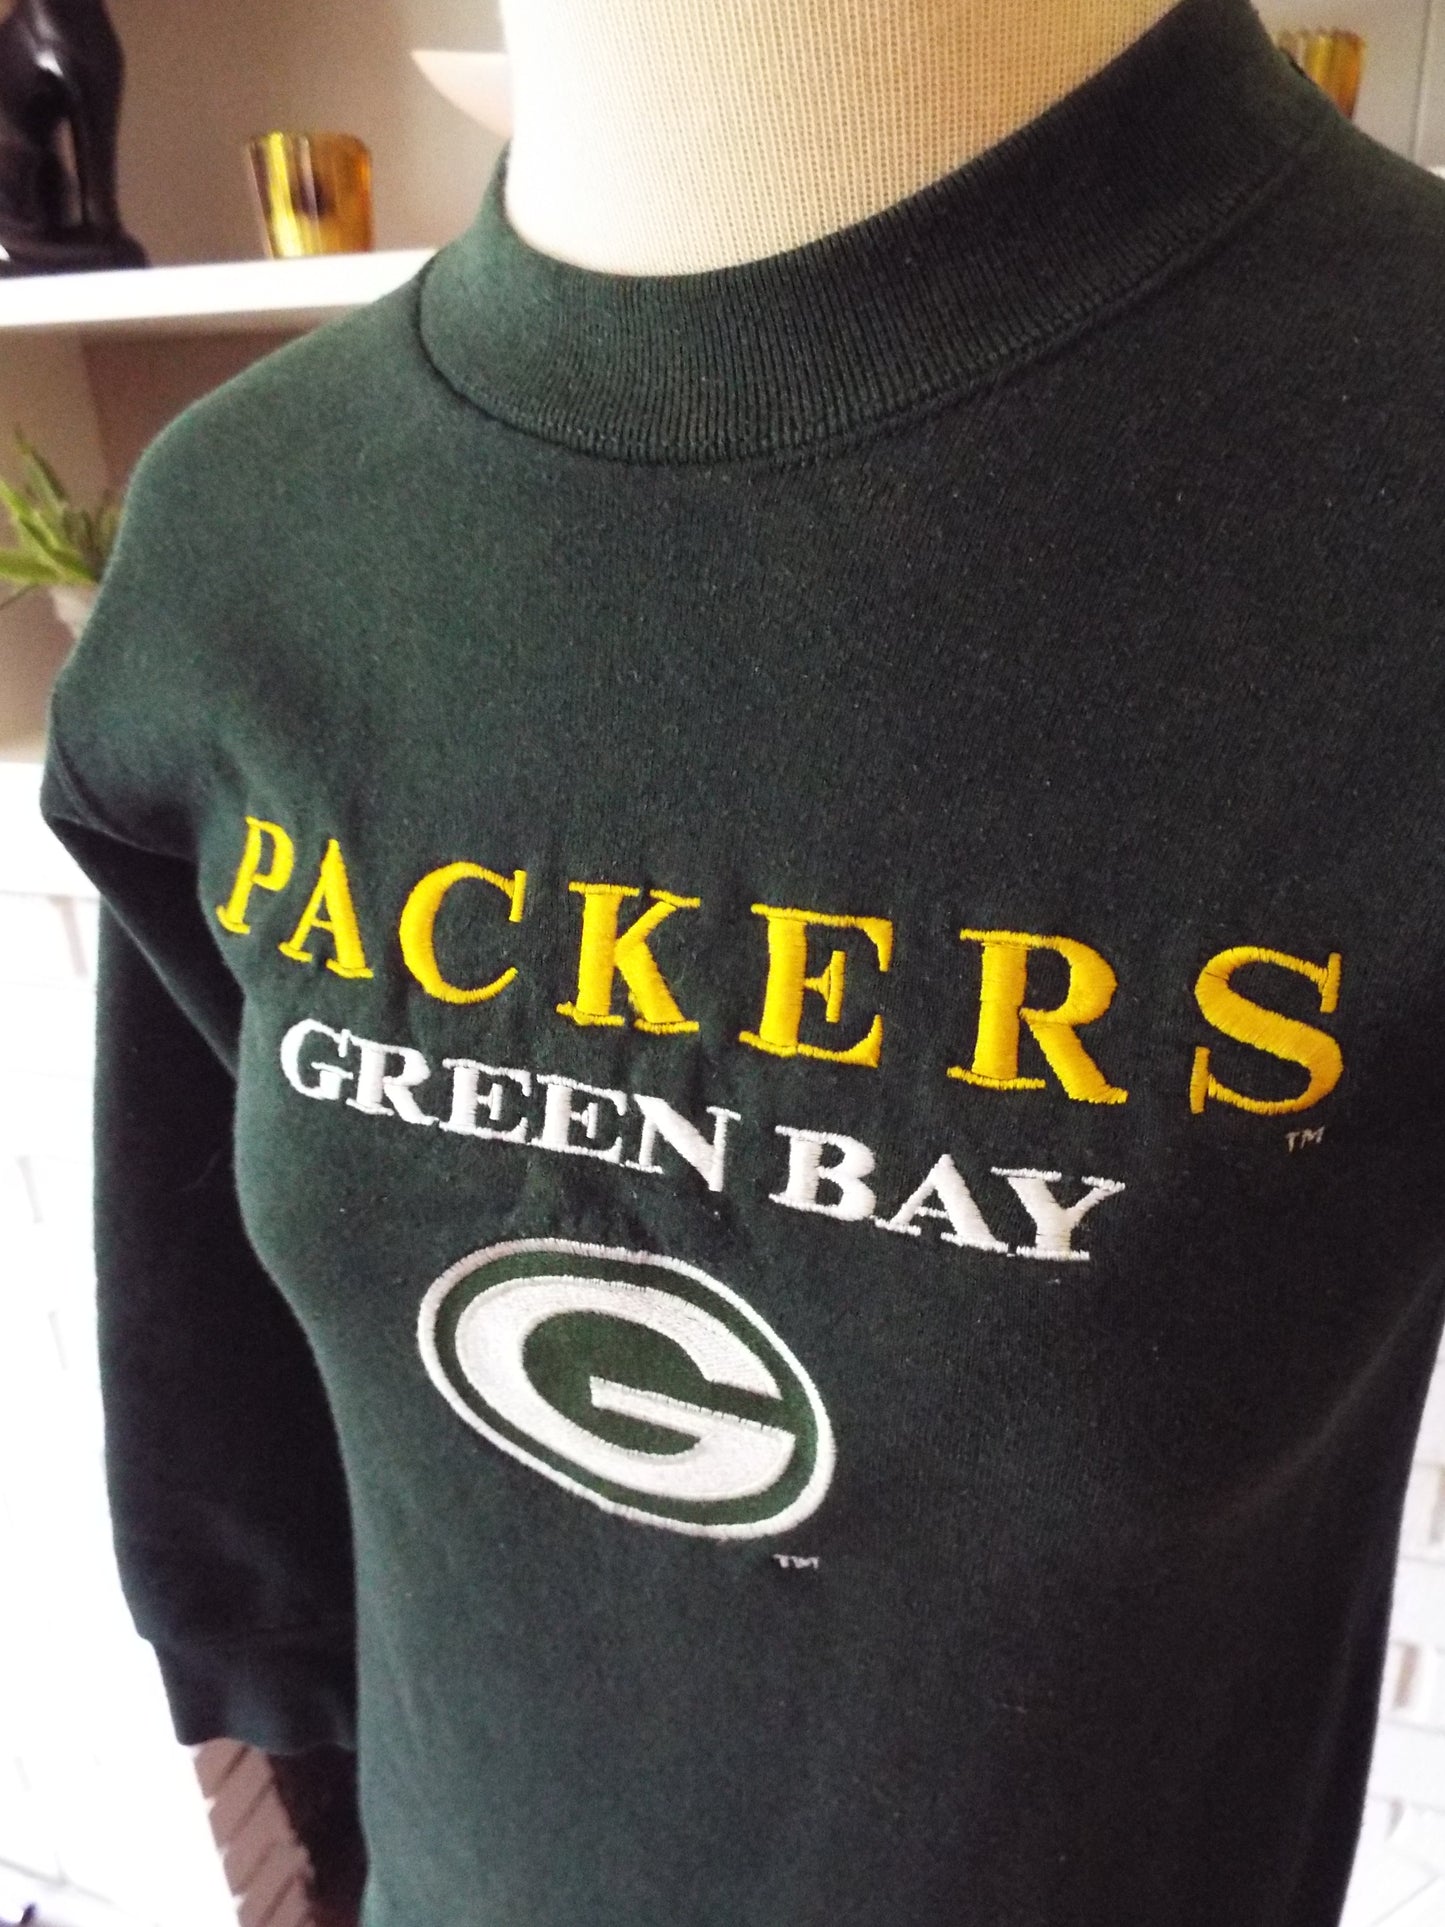 Vintage Green Bay Packers Kid Sweatshirt by Salem Sportswear